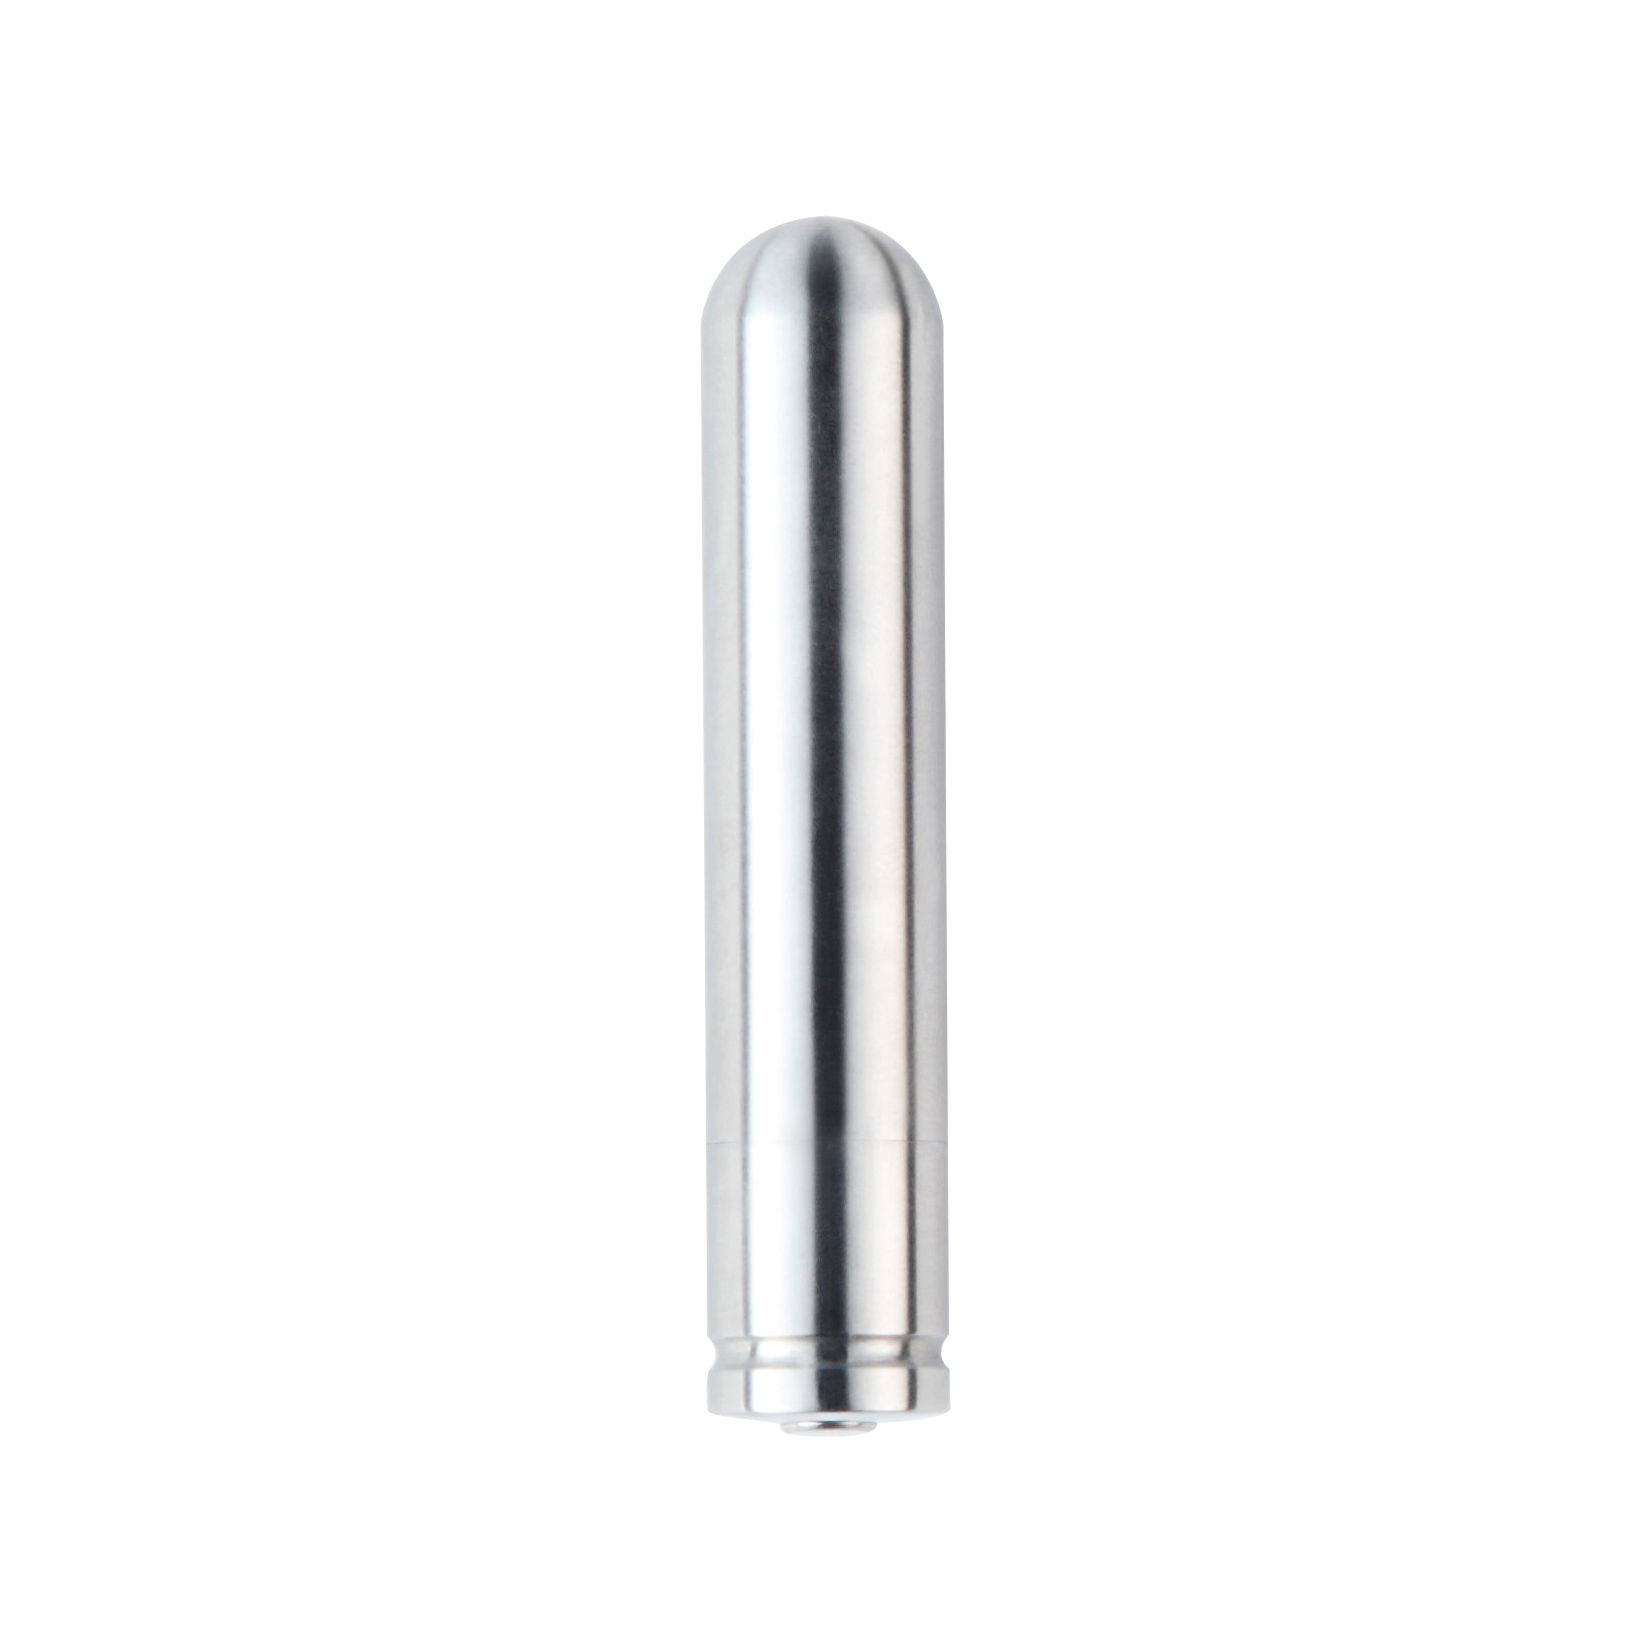 NEXUS Nexus Silber mini-vibratoren - Ferro Bullet-Vibrator 